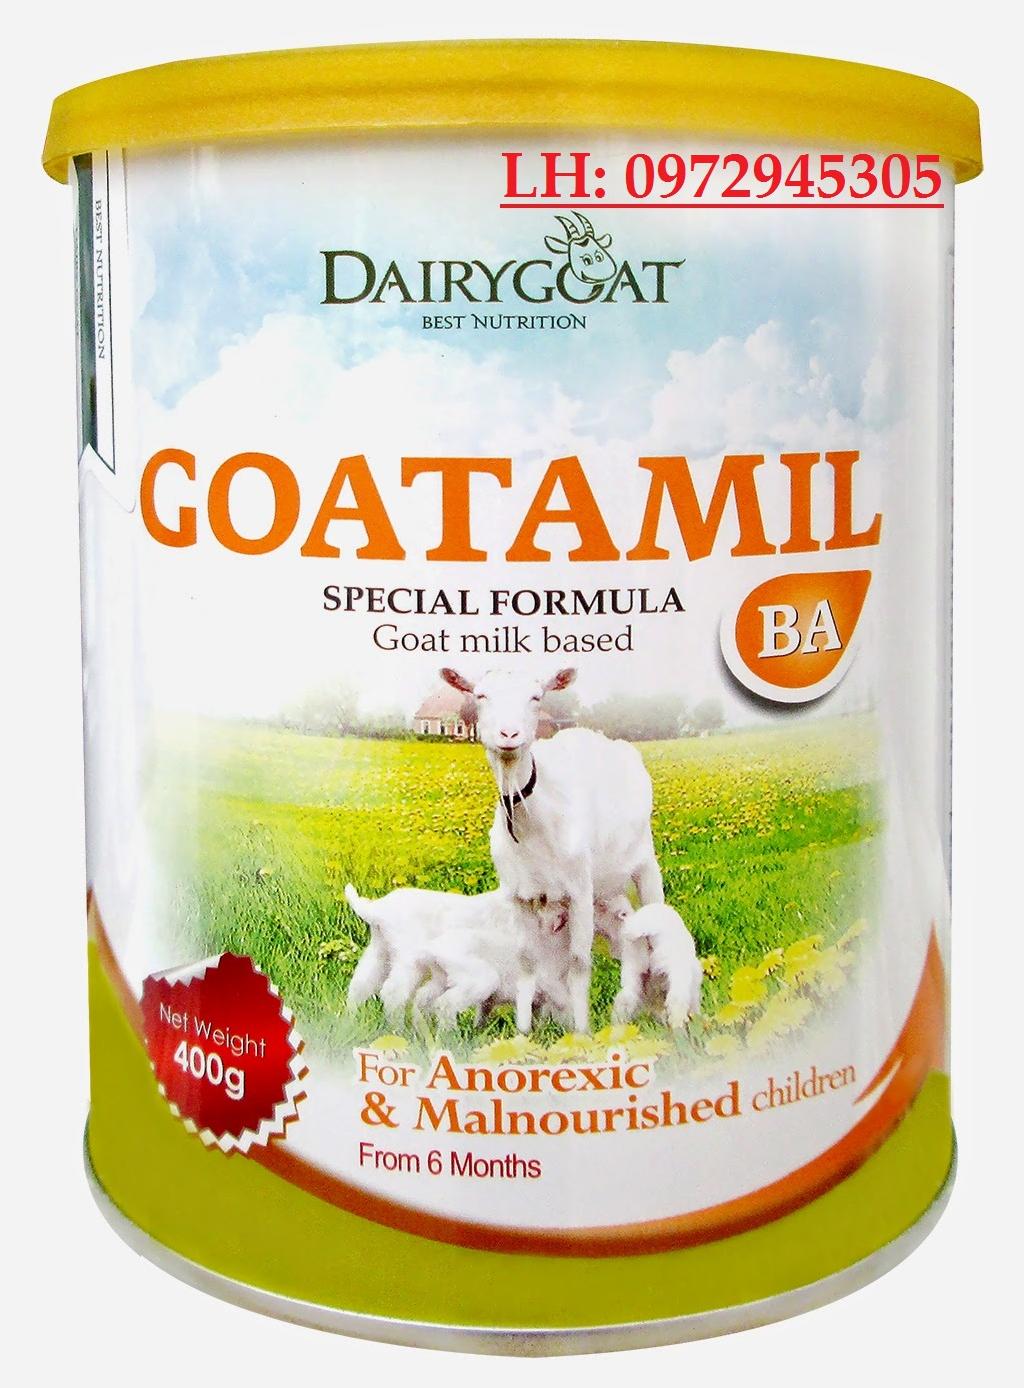 Sữa dê Goatamil BA mua ở đâu, giá bao nhiêu?